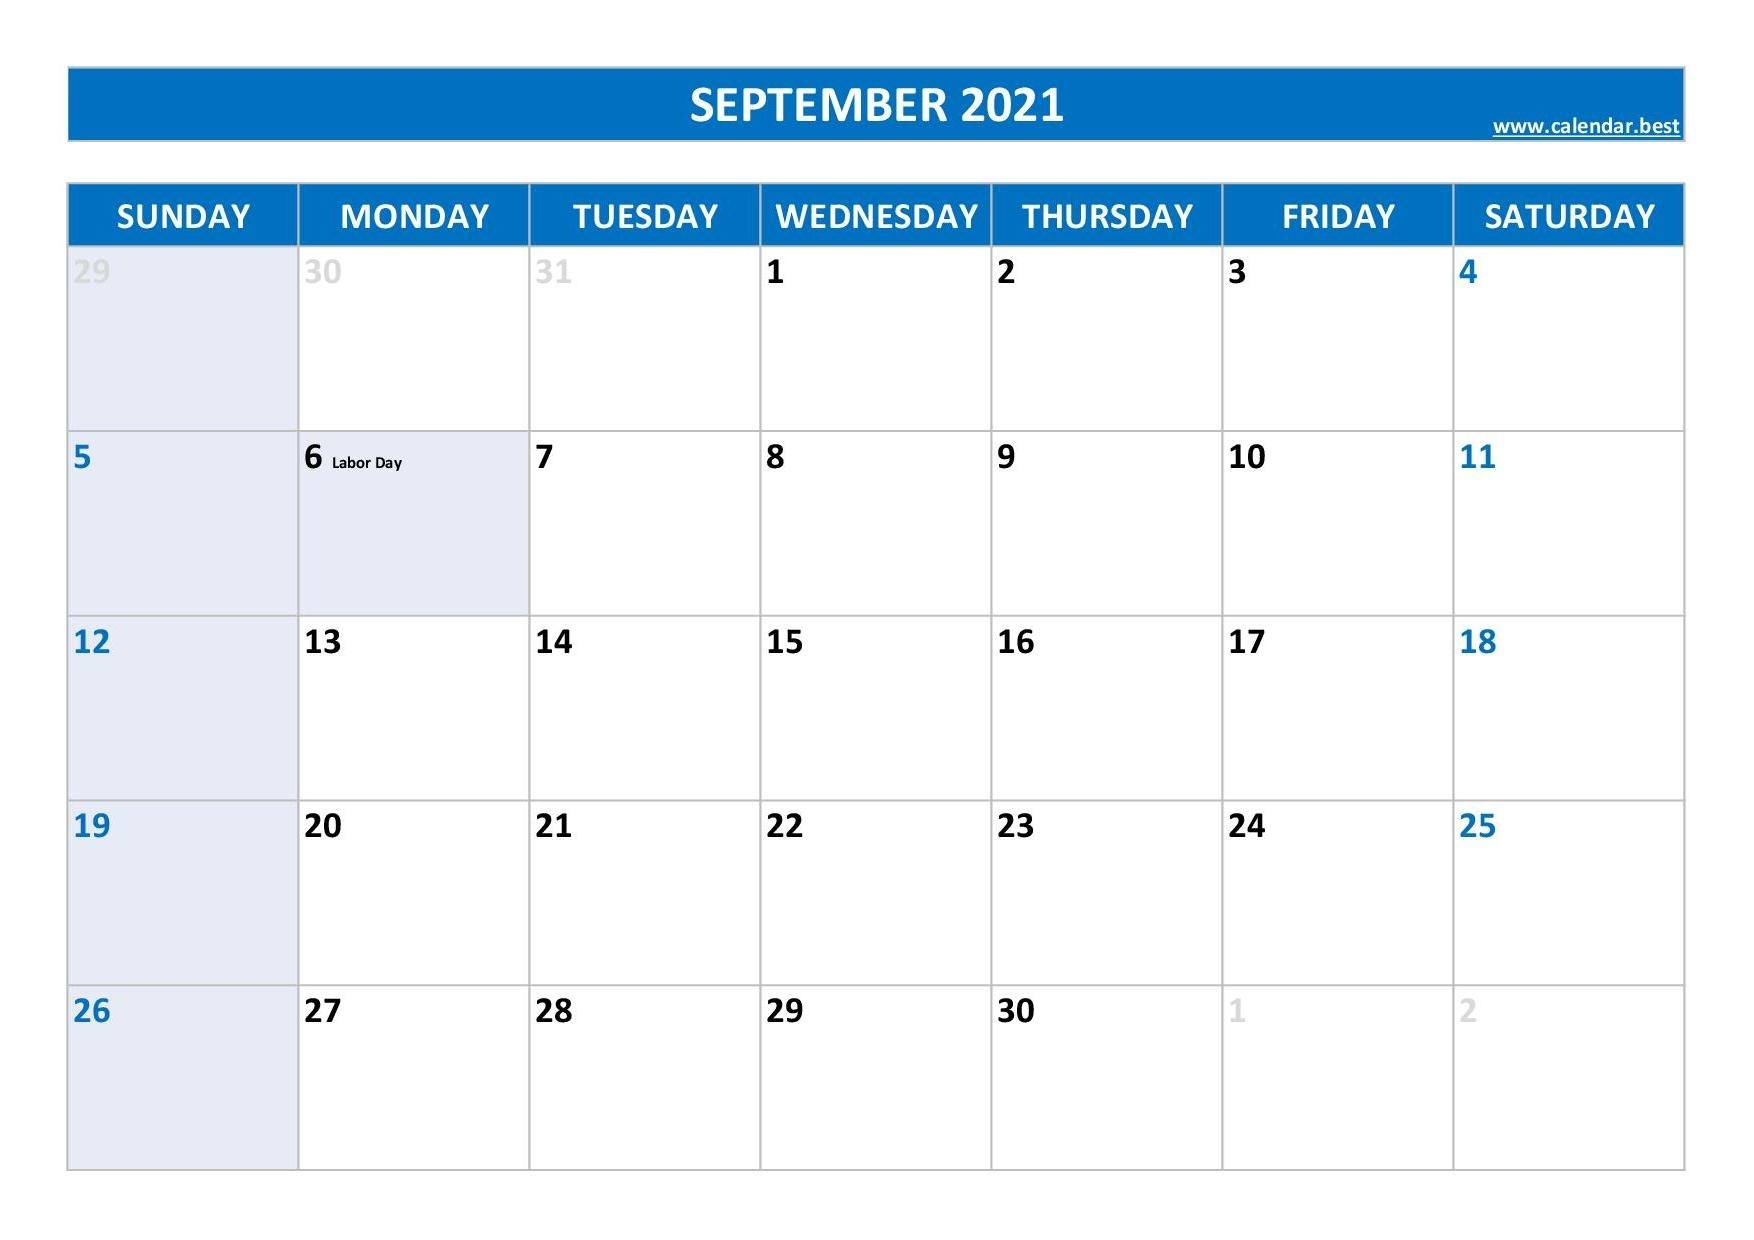 September 2021 Calendar -Calendar.best September 2021 Calendar Virgo